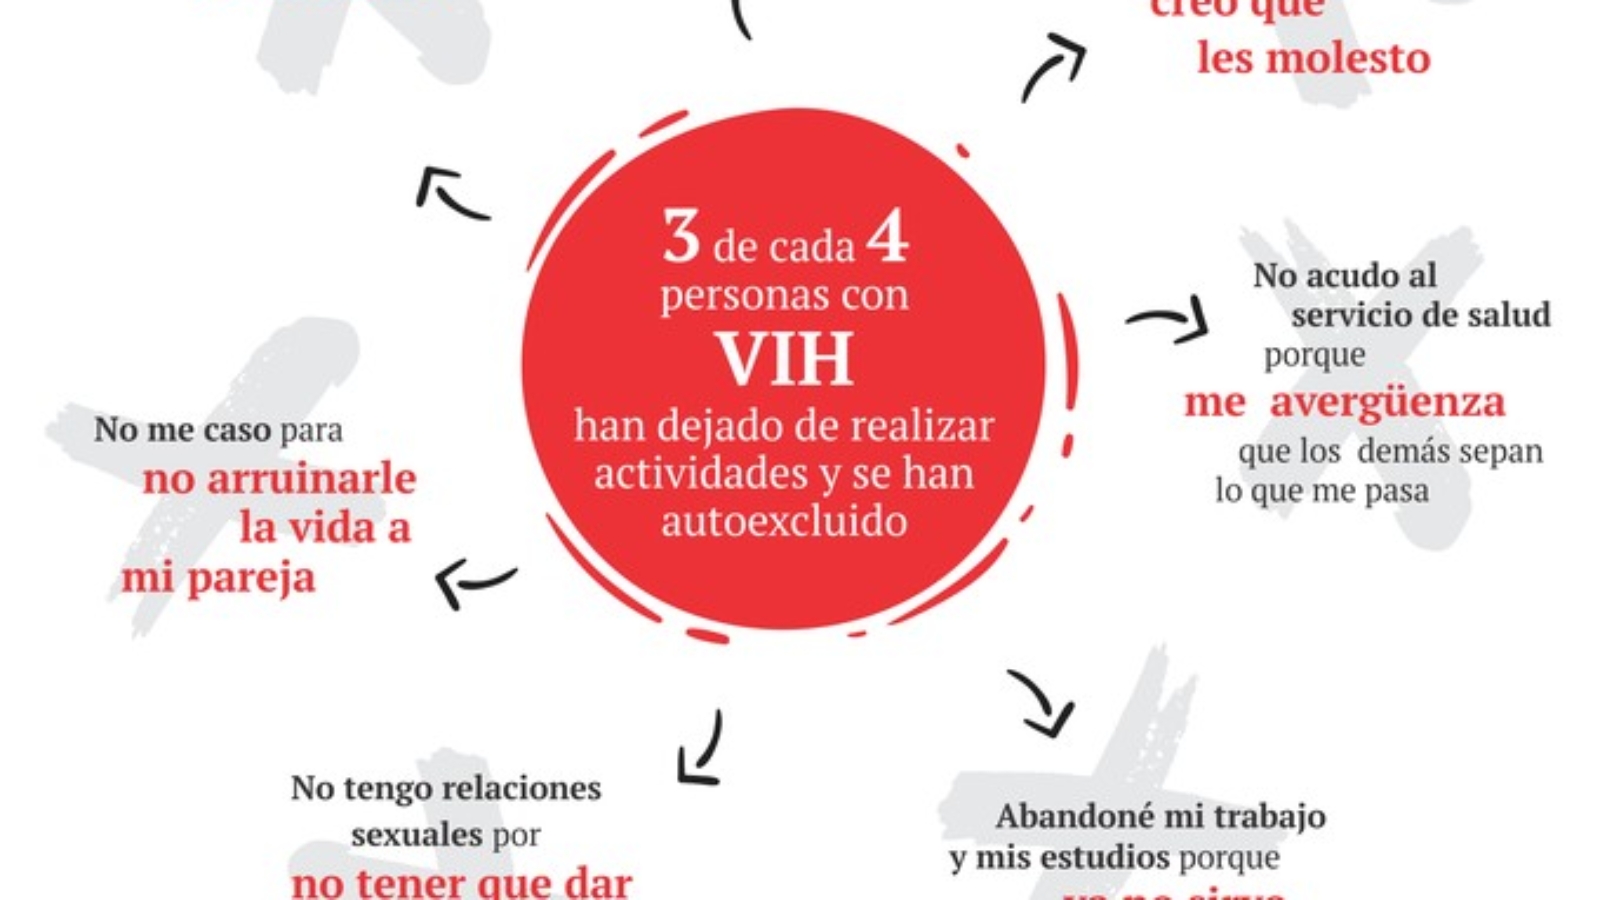 paraguay-3-de-cada-4-personas-con-vih-sufren-estigma-y-discriminacion-1-1518998763